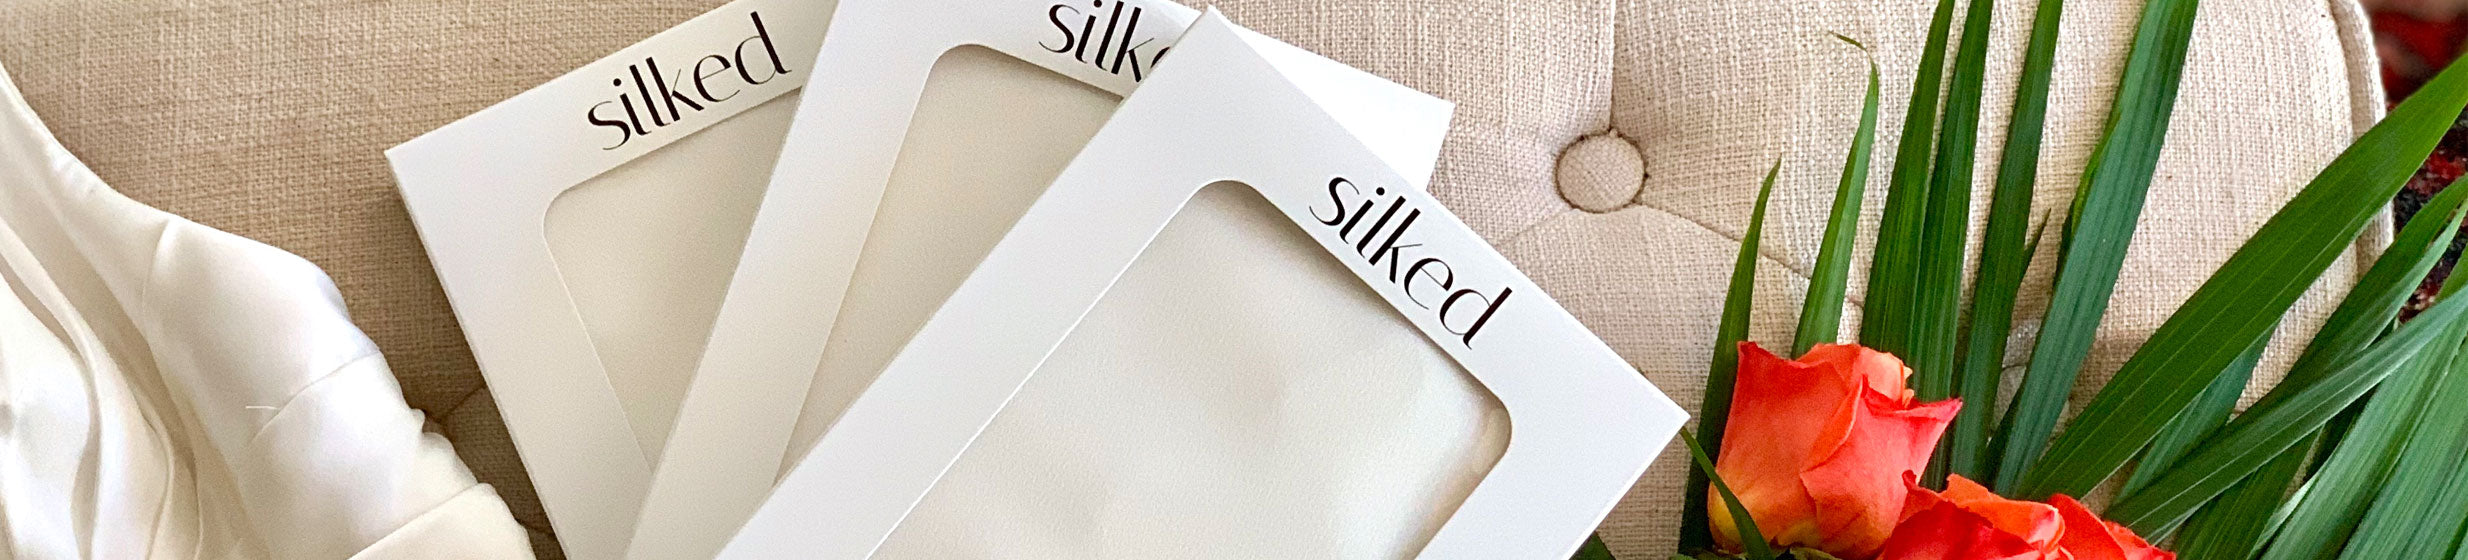 Silked | askderm.com